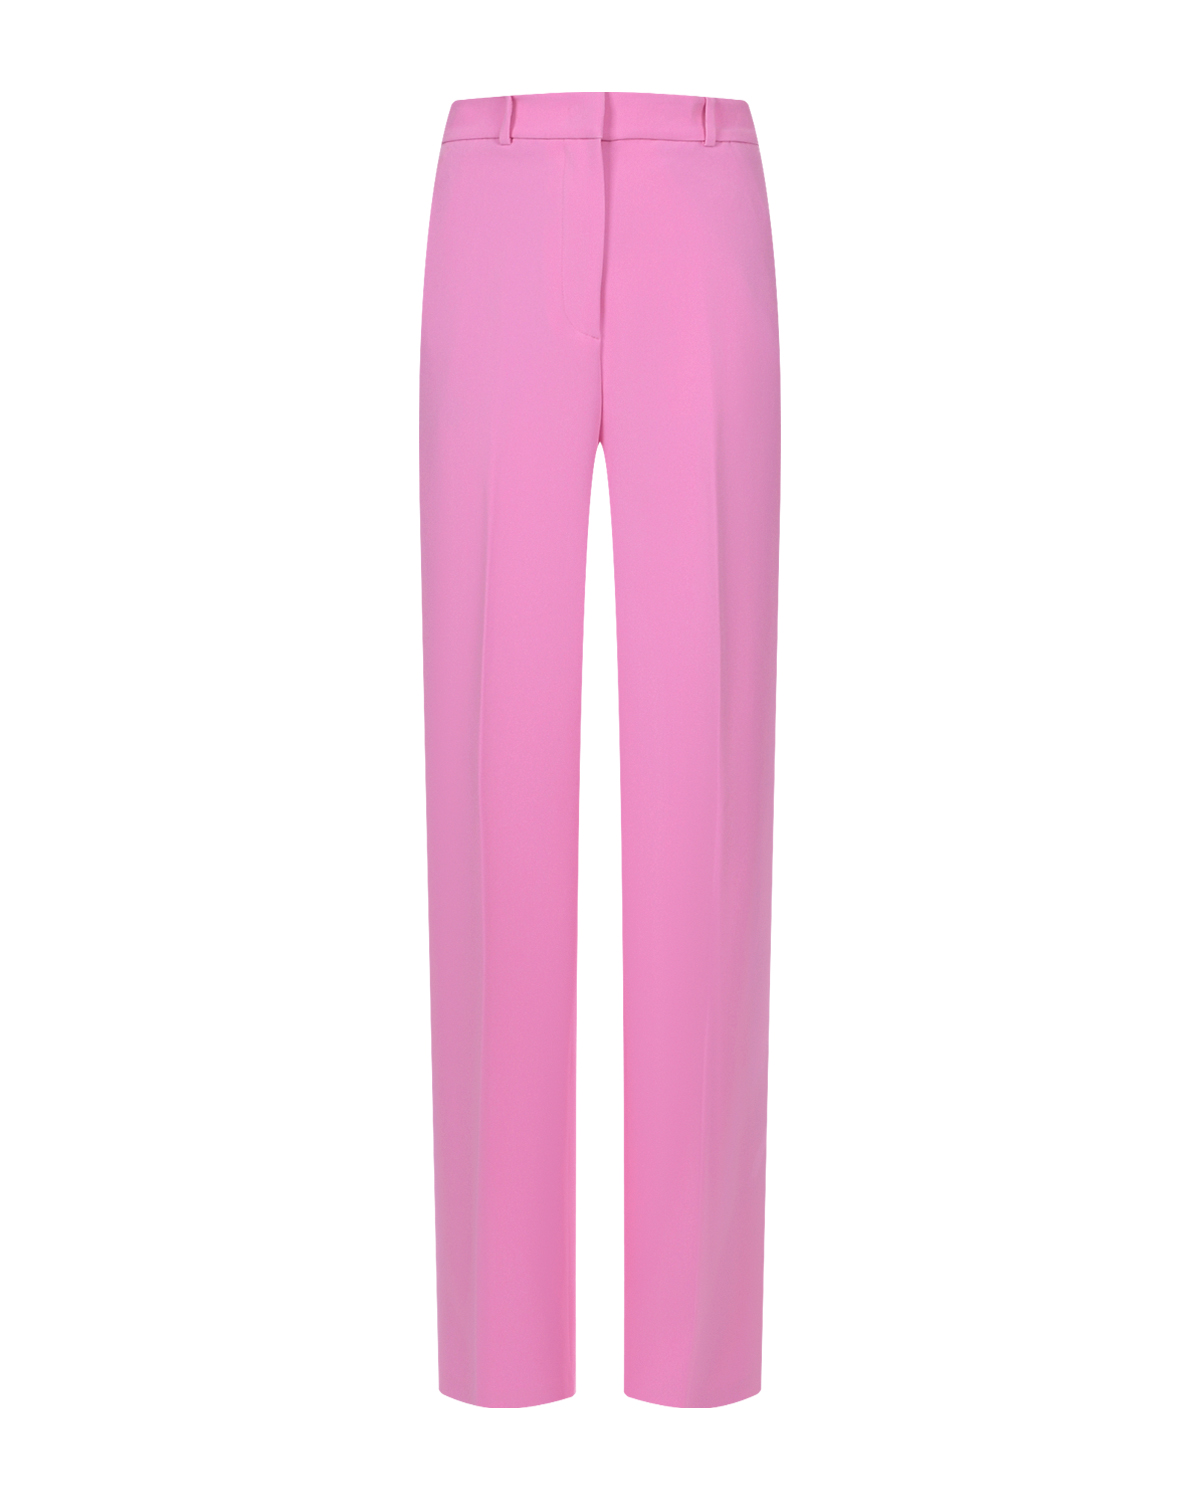 Розовые брюки со стрелками Hinnominate, размер 42, цвет розовый - фото 1